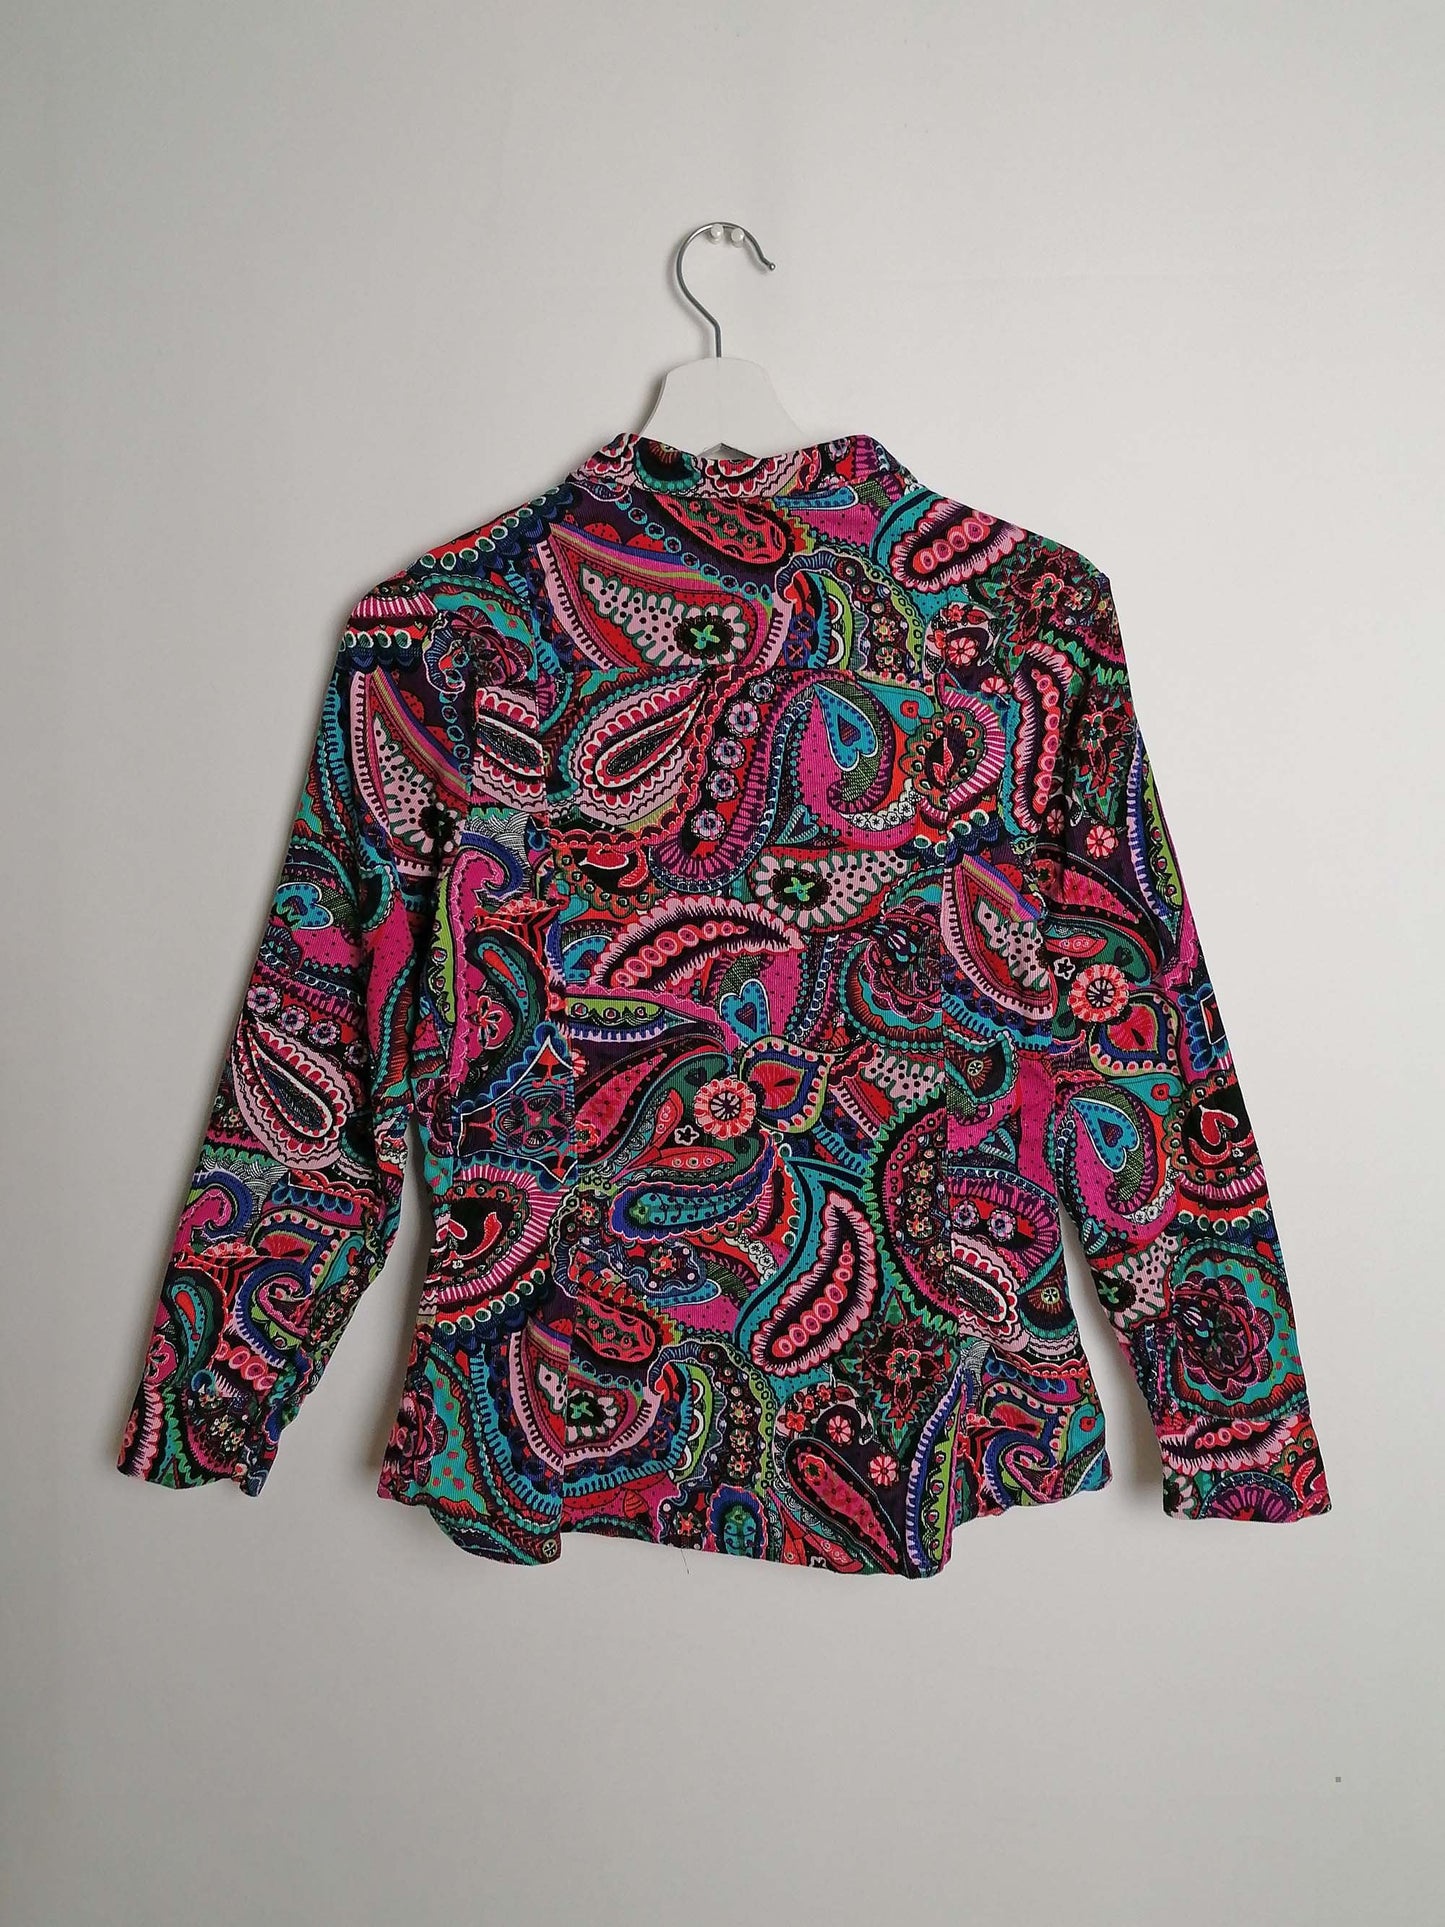 Corduroy Shirt Paisley Pattern 70's Style - size XS-S